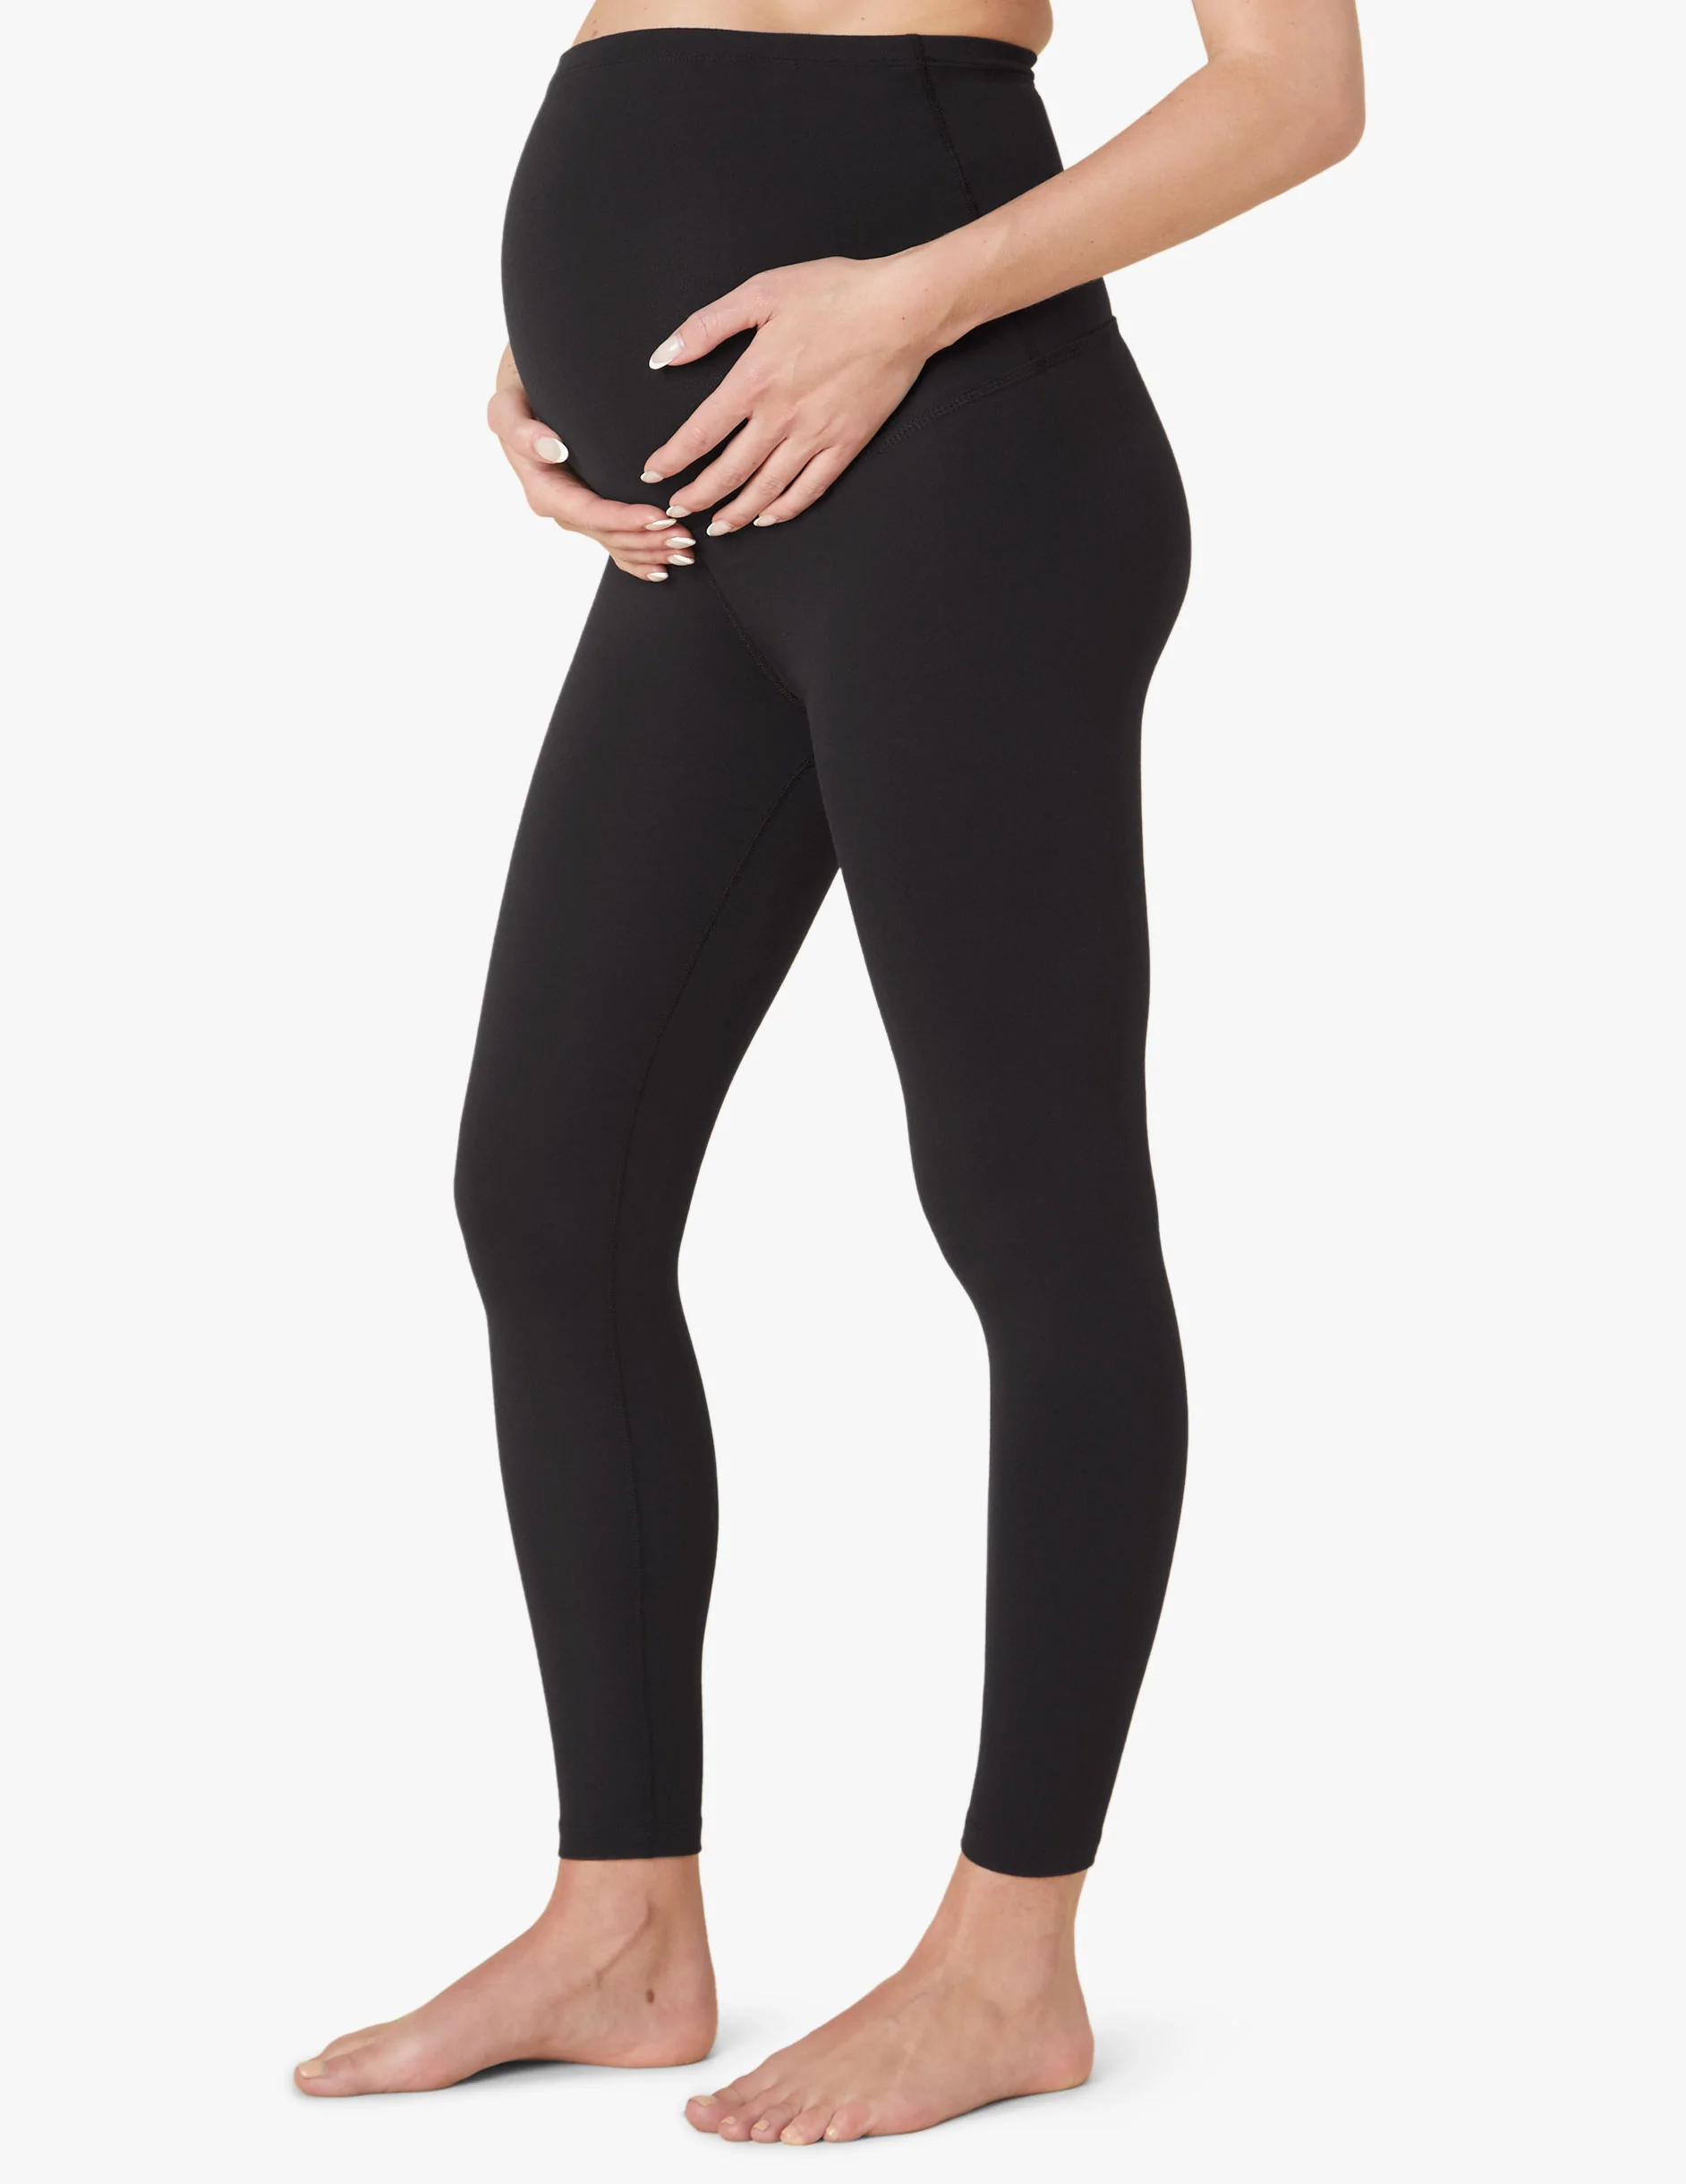 Woman in black maternity leggings 